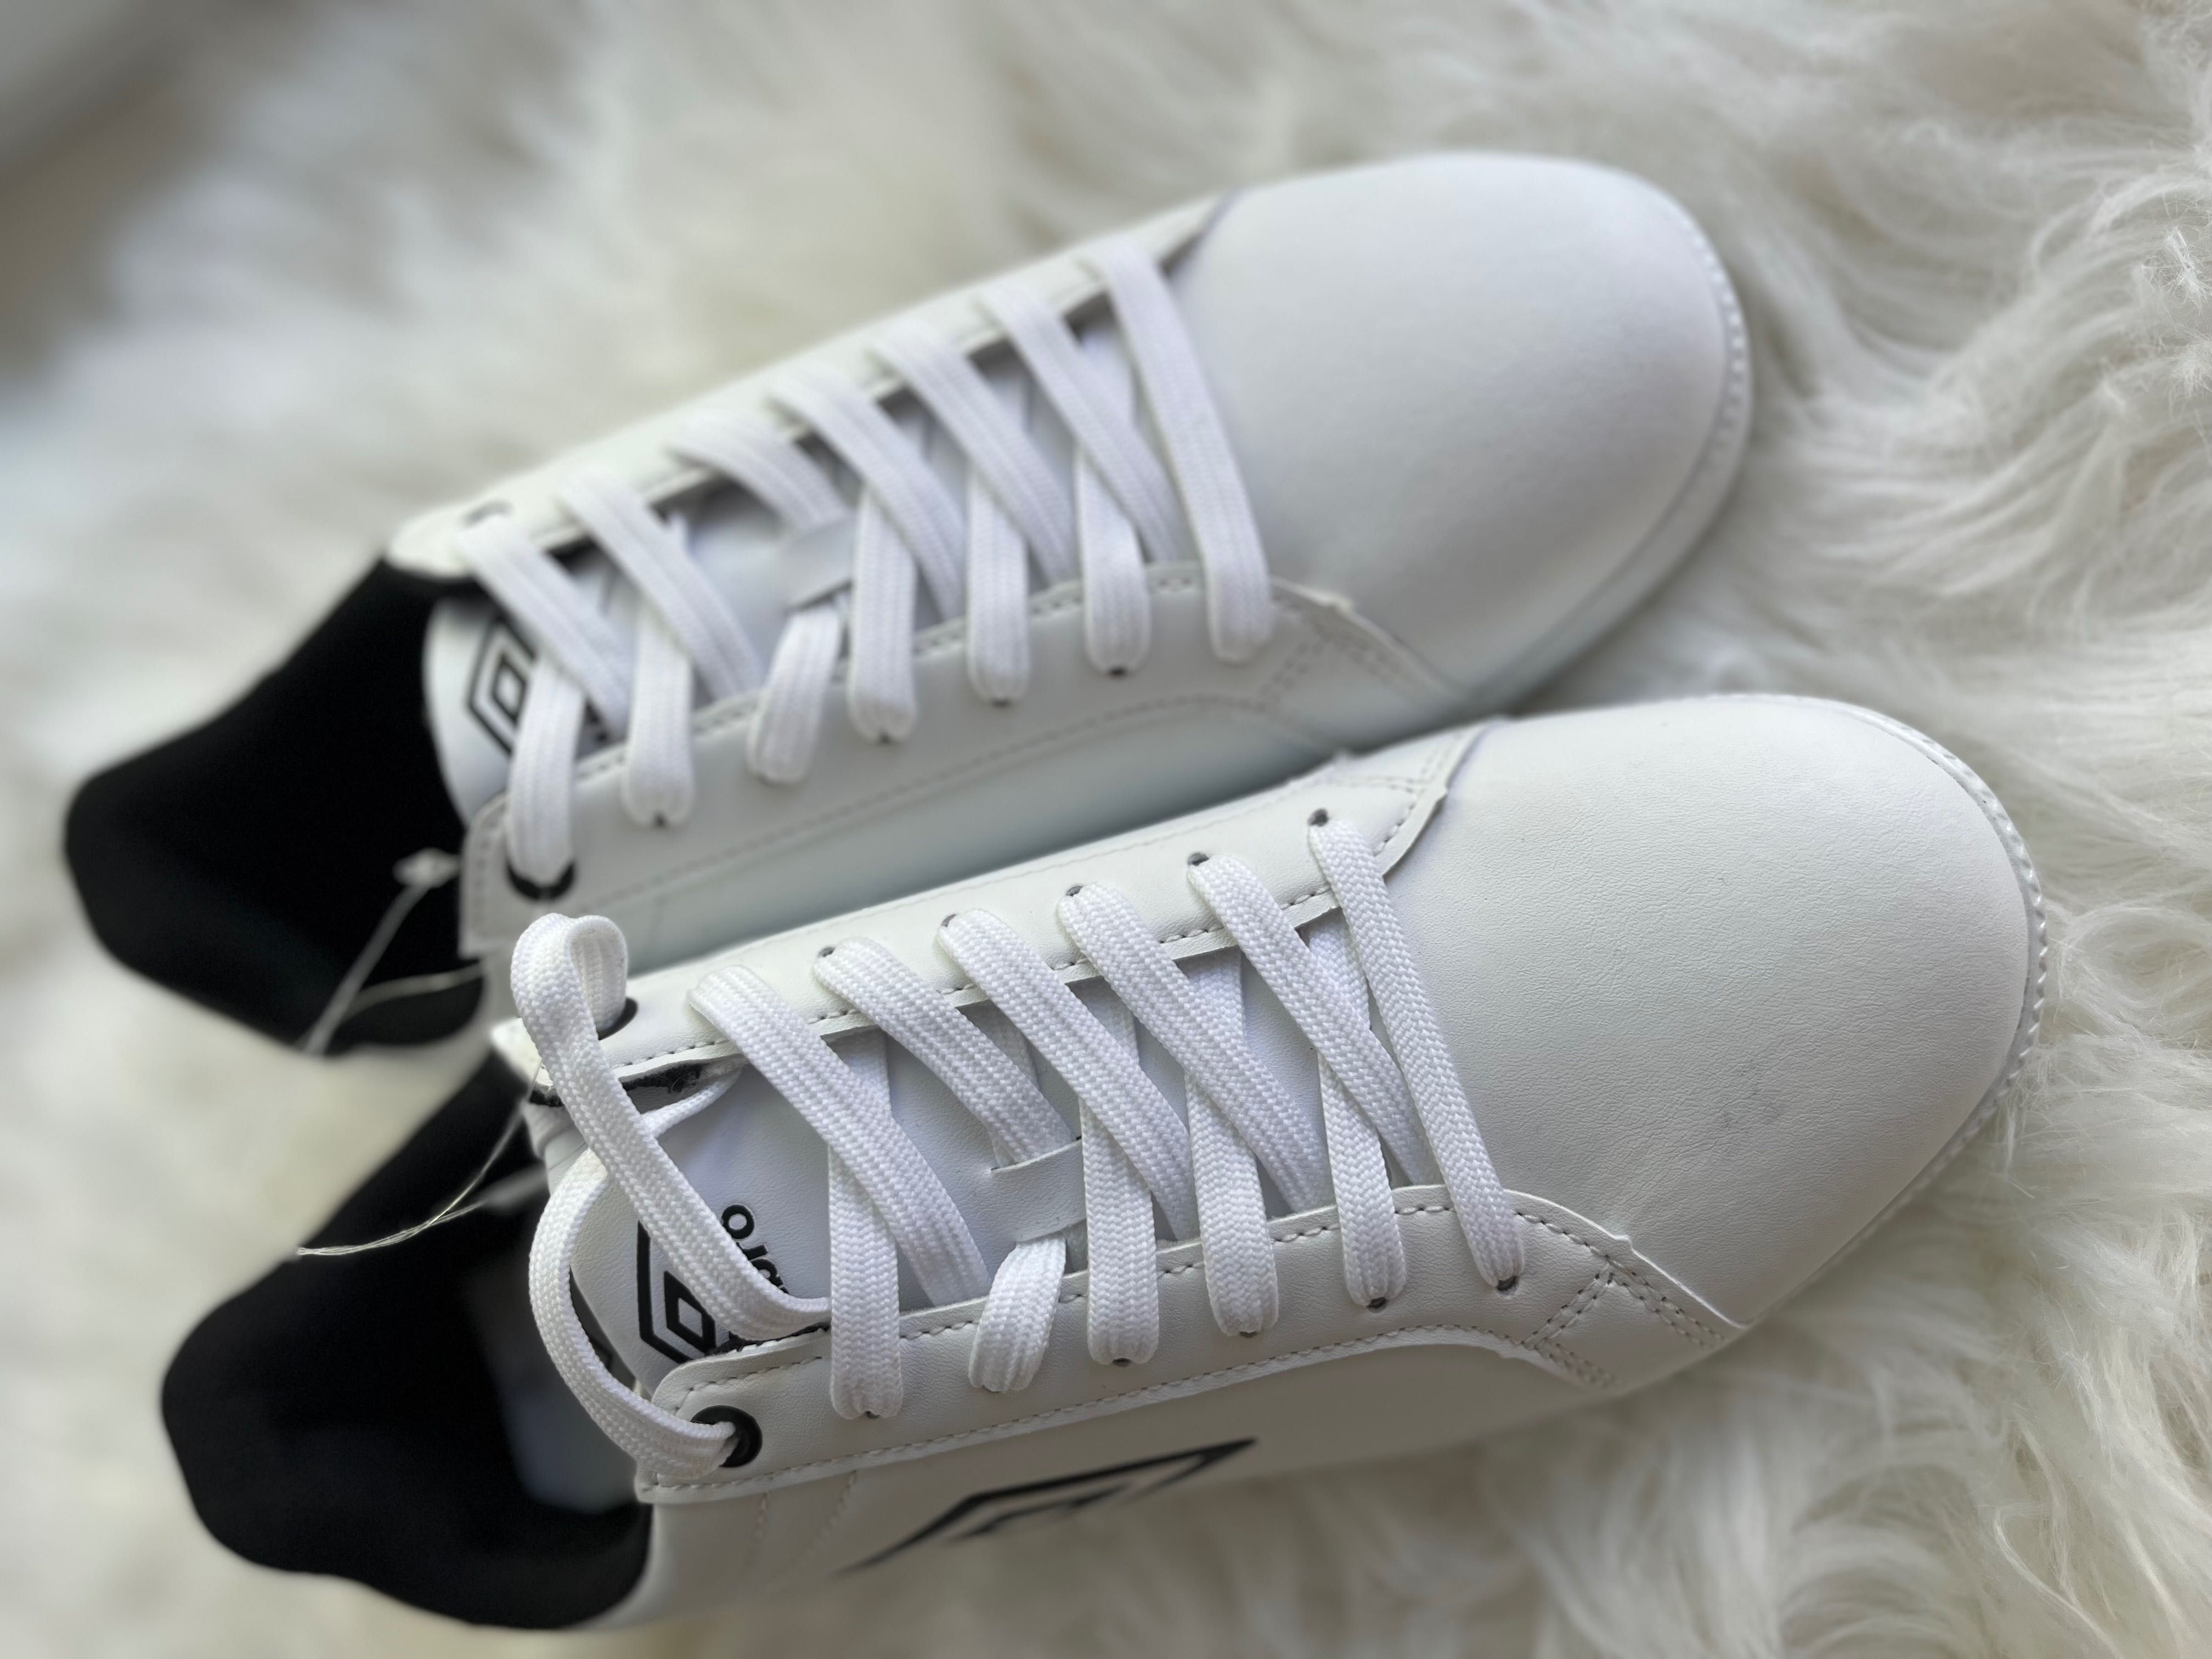 Кросівки білі Umbro